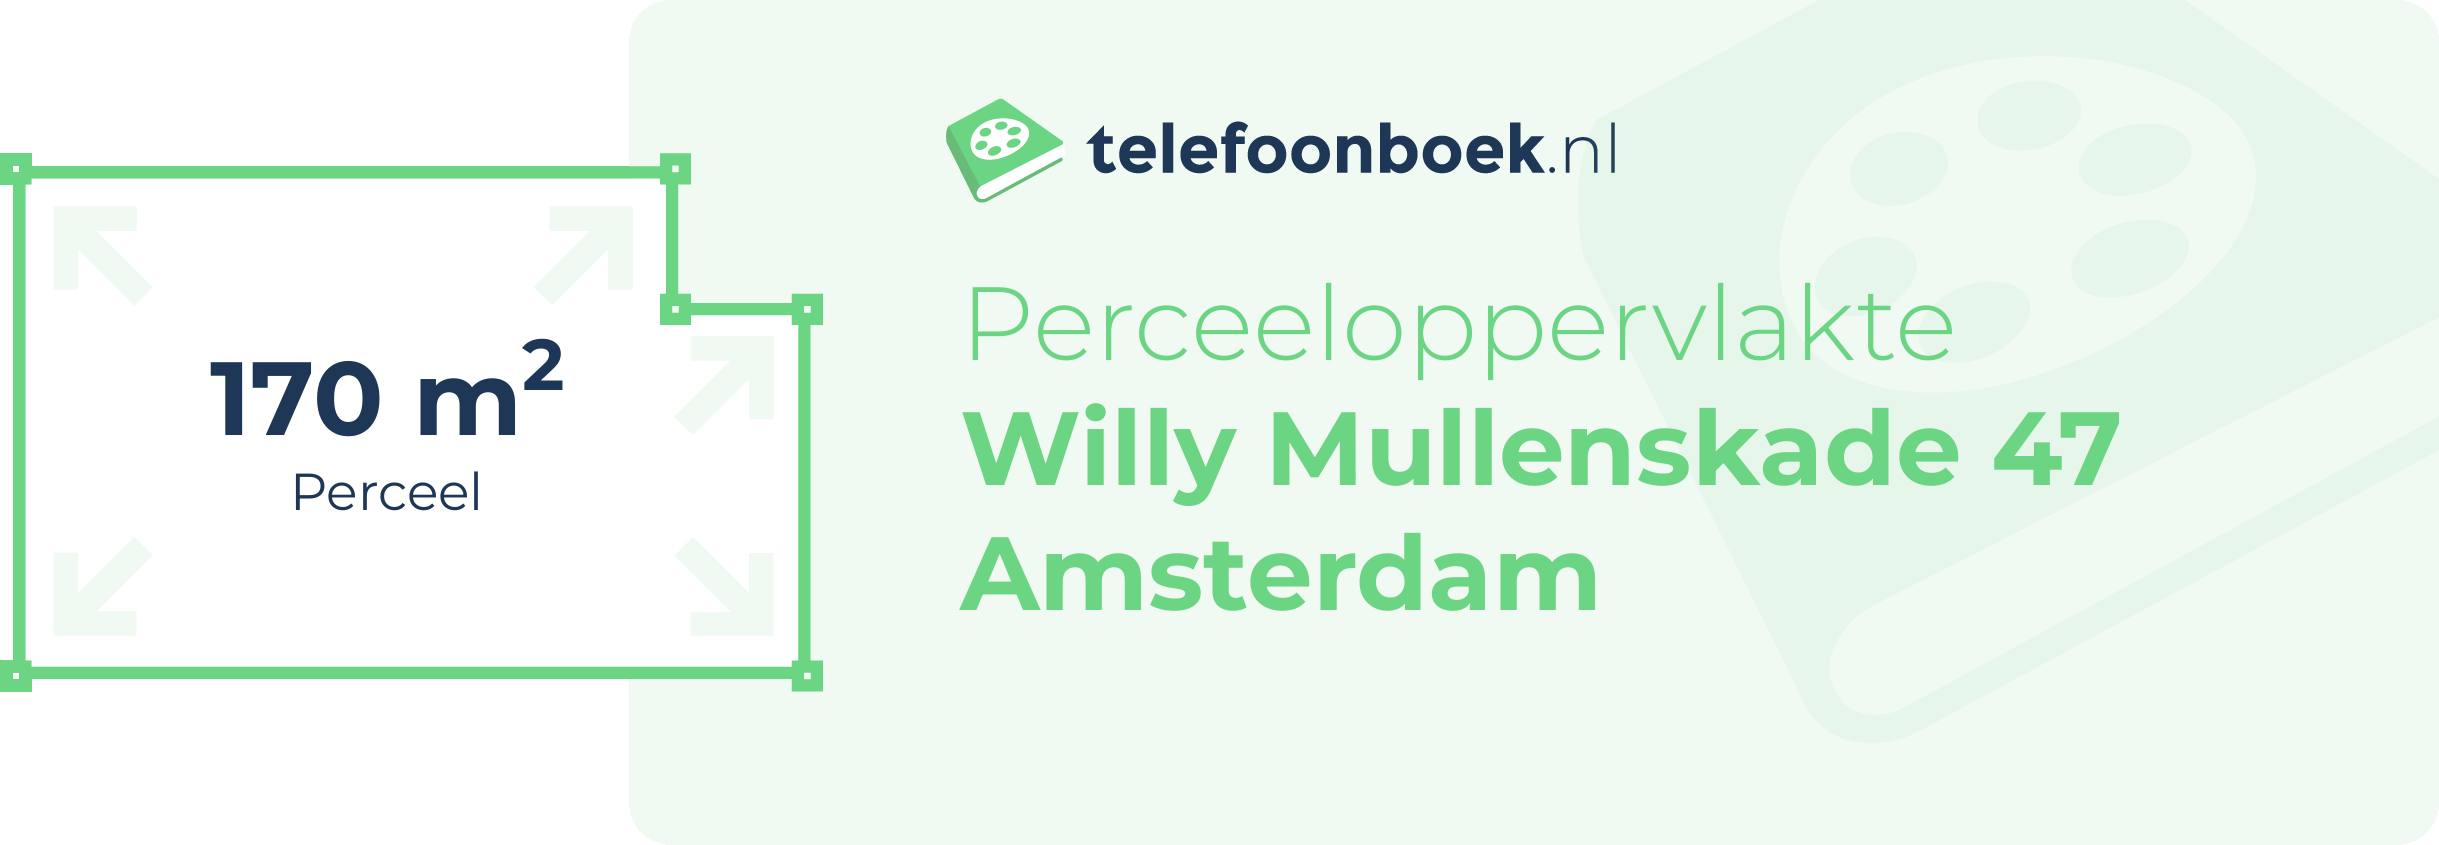 Perceeloppervlakte Willy Mullenskade 47 Amsterdam